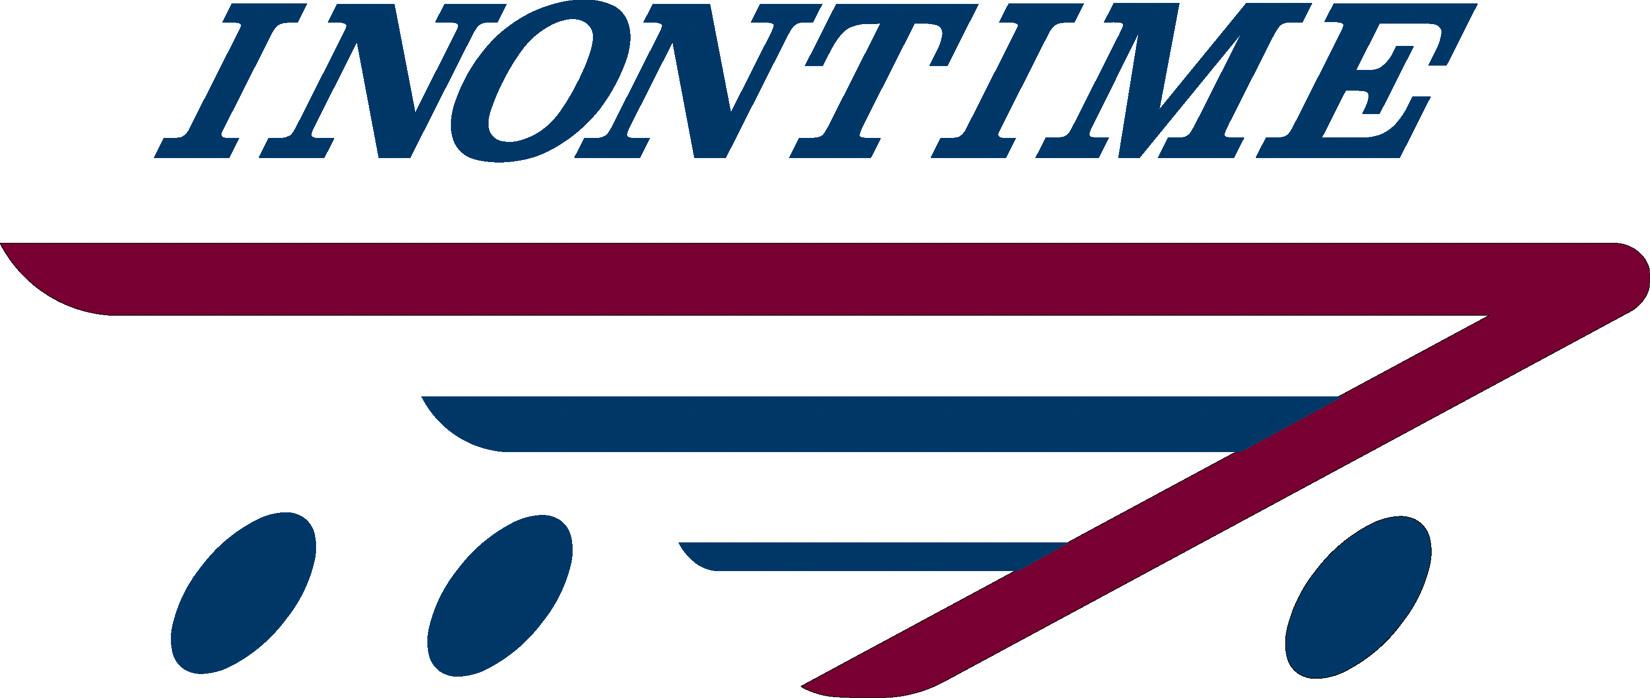 Inontime Logo_Jpeg.jpg